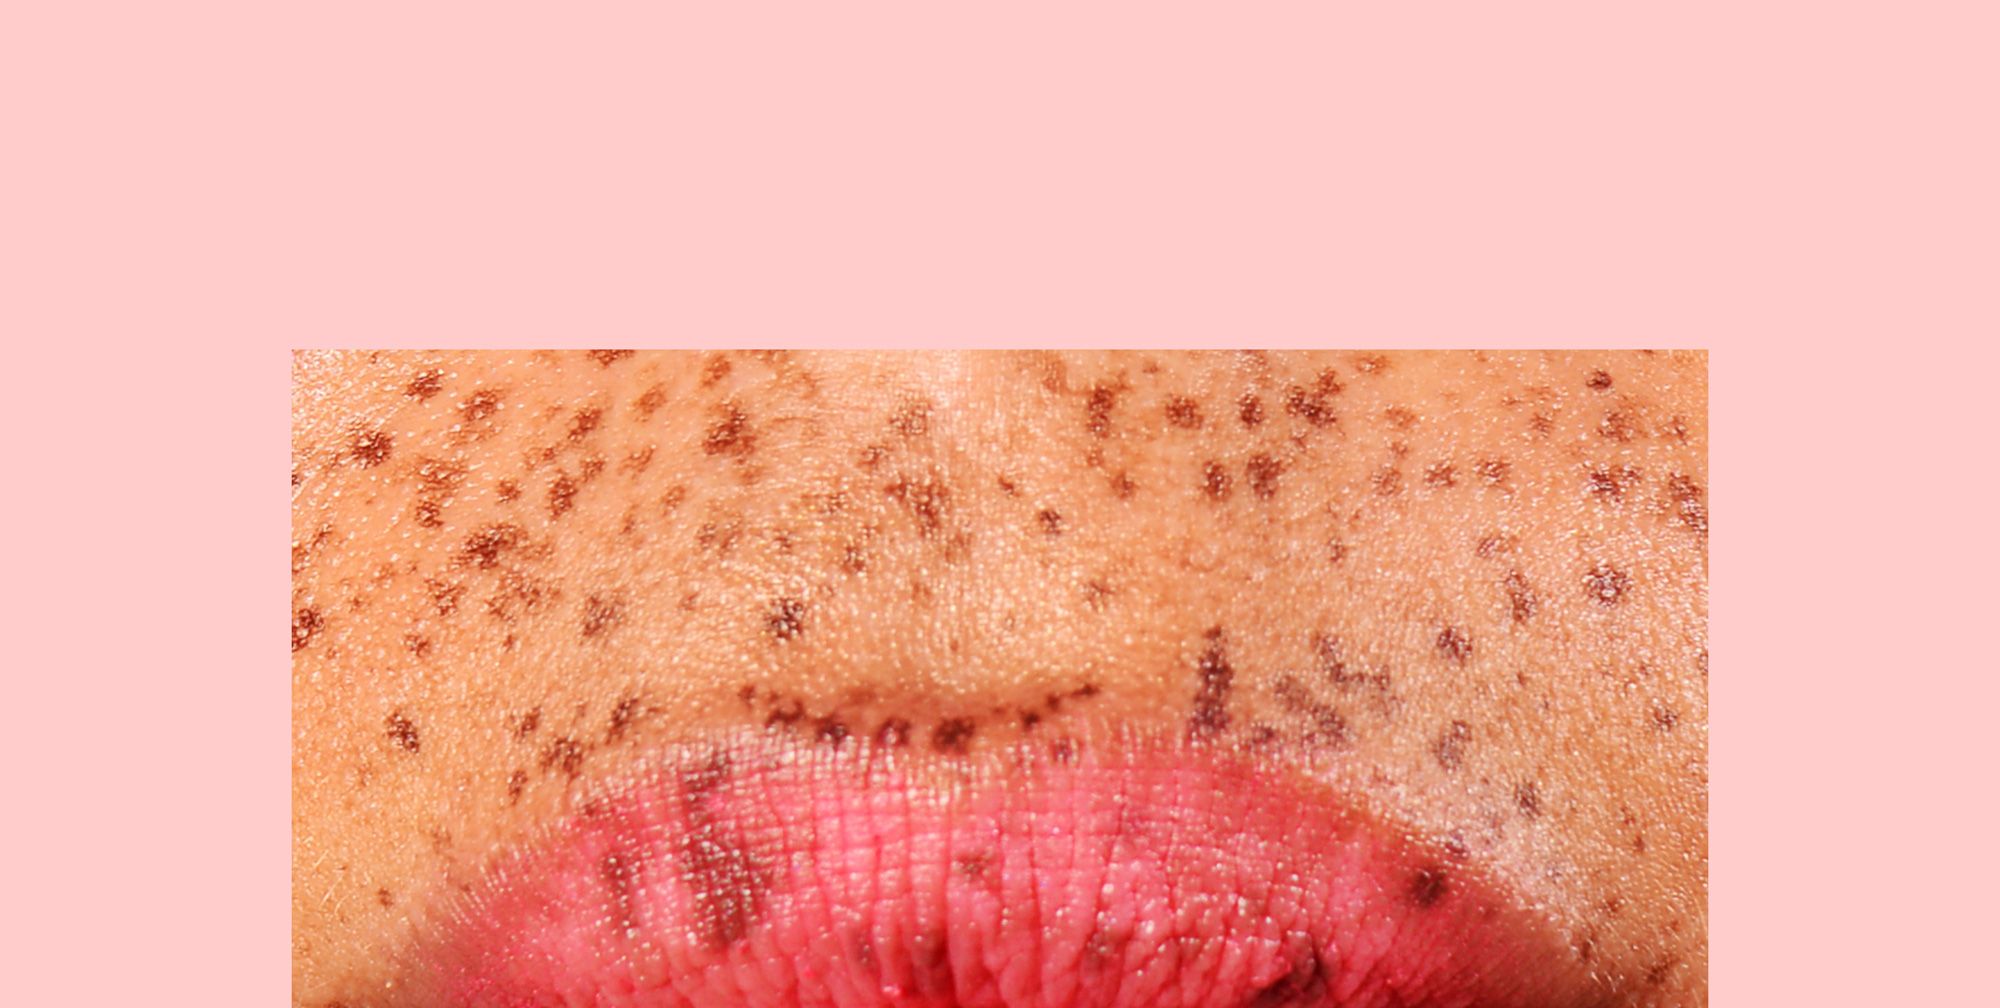 Lip, Pink, Skin, Mouth, Beauty, Lip gloss, Lipstick, Cheek, Close-up, Material property, 